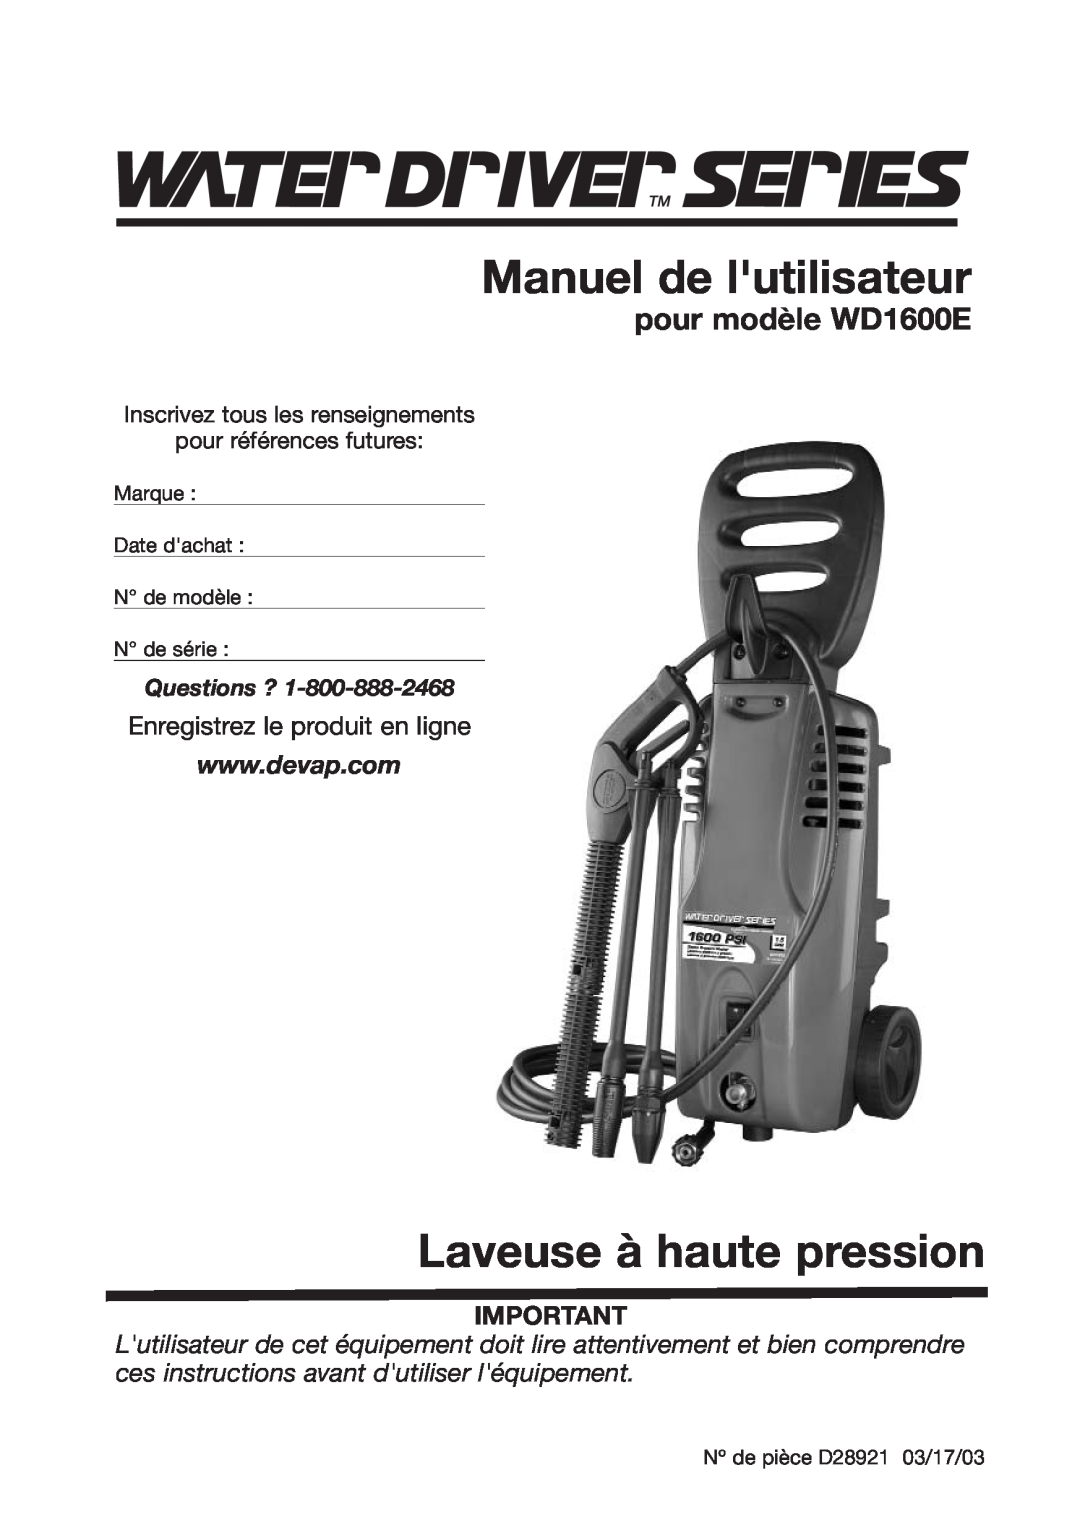 DeVillbiss Air Power Company D28921 Manuel de lutilisateur, Laveuse à haute pression, pour modèle WD1600E, Questions ? 